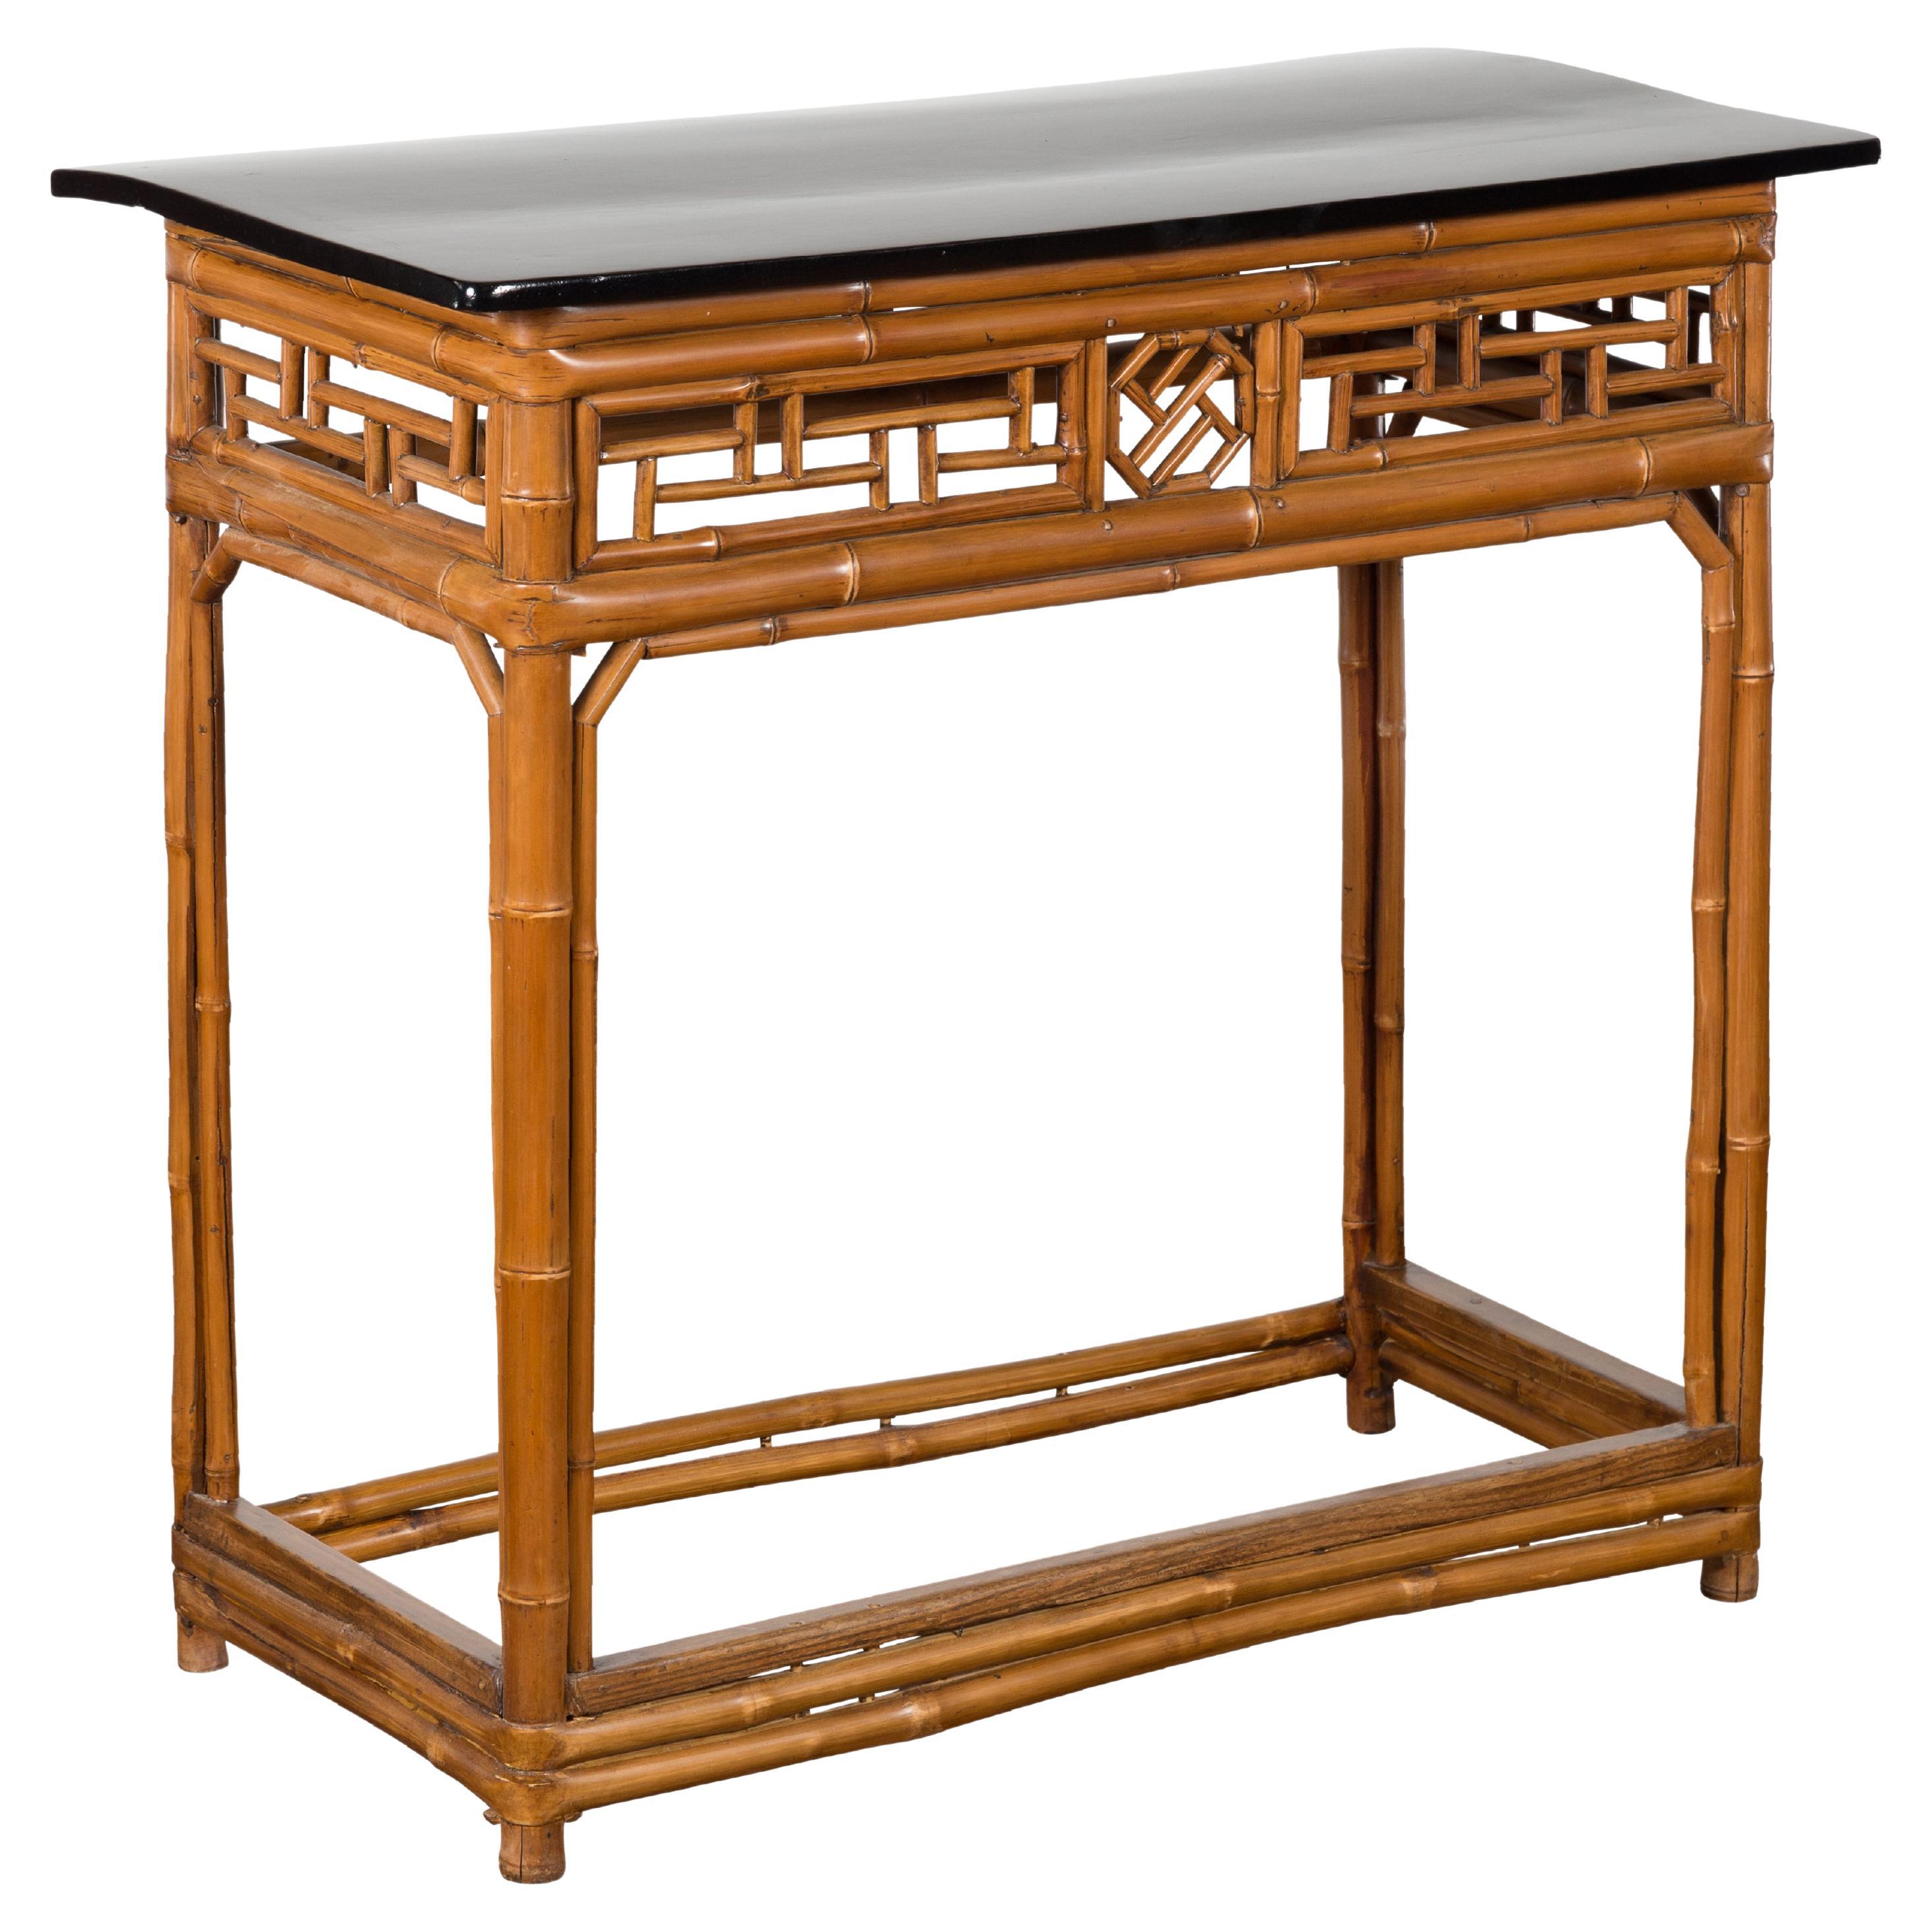 Table console en bambou de la fin de la dynastie Qing chinoise avec plateau laqué noir